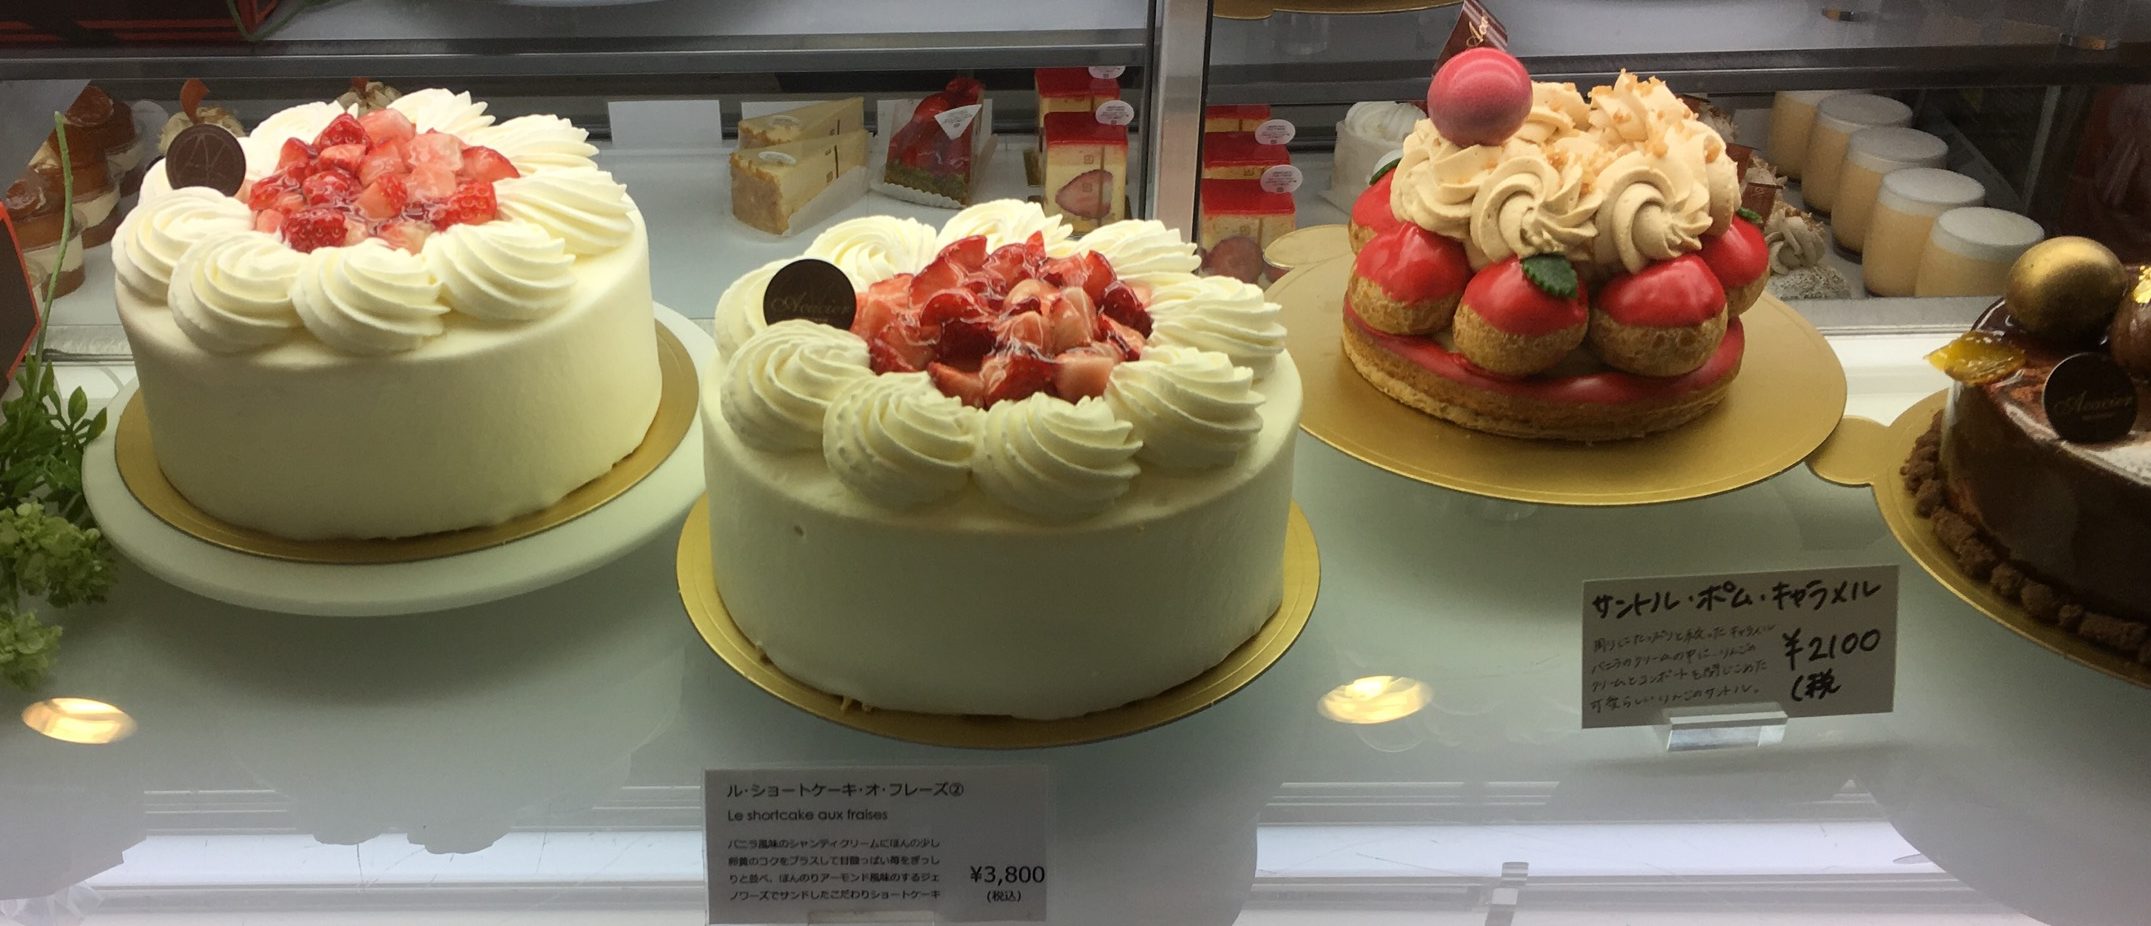 【浦和区】おすすめのケーキ店「アカシエ (Acacier)」埼玉県評価1位の美味しいお店